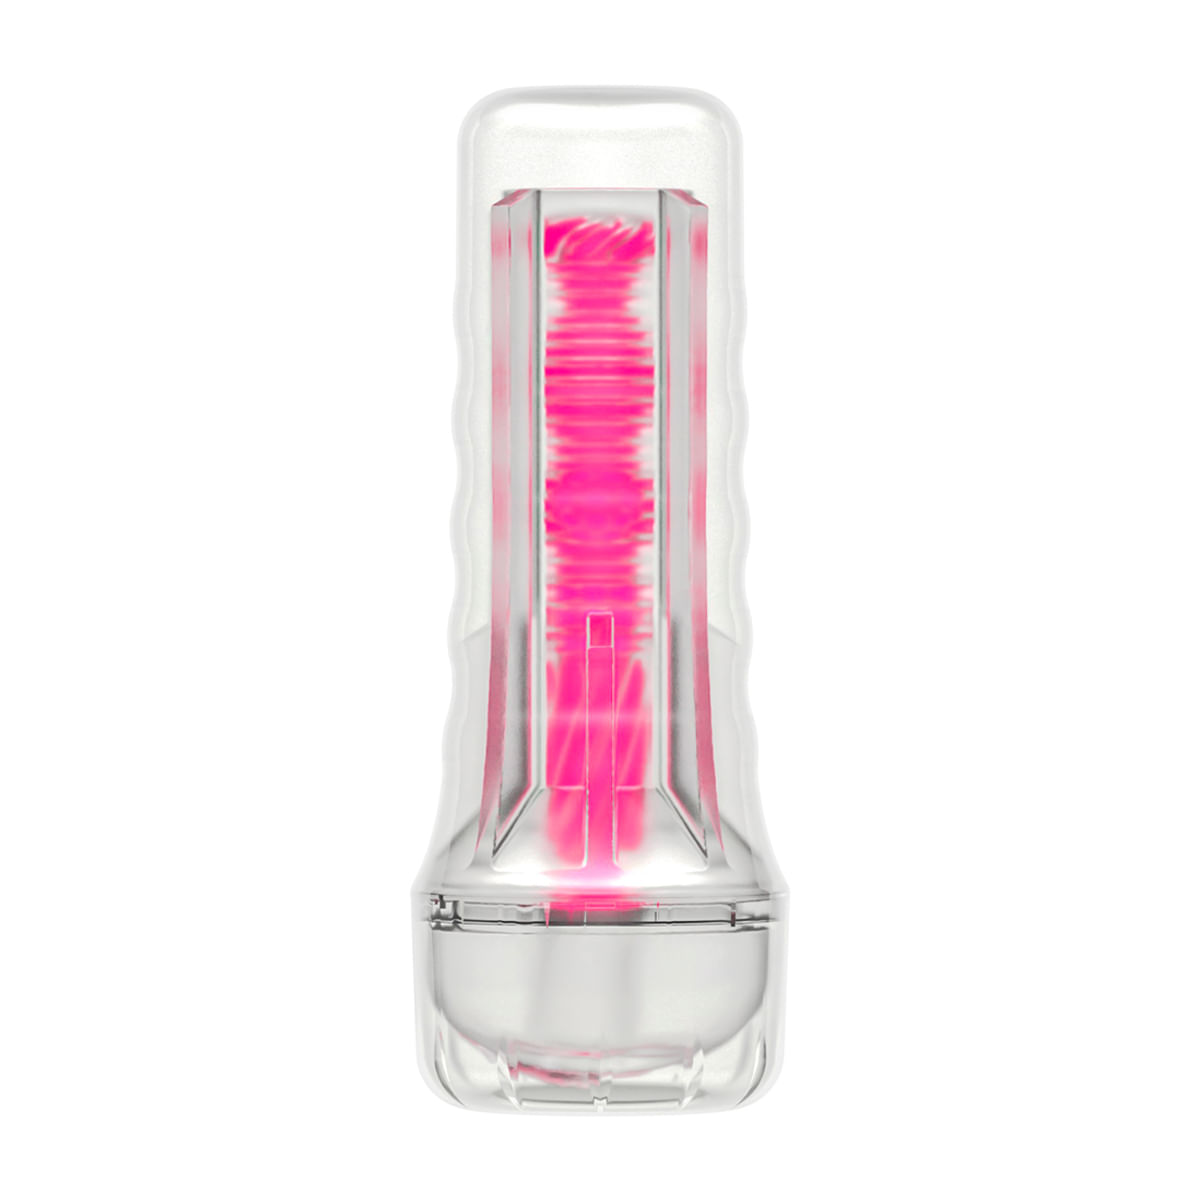 Lovetoy Lumino Play Masturbador Lanterna em Formato de Vagina Vip Mix